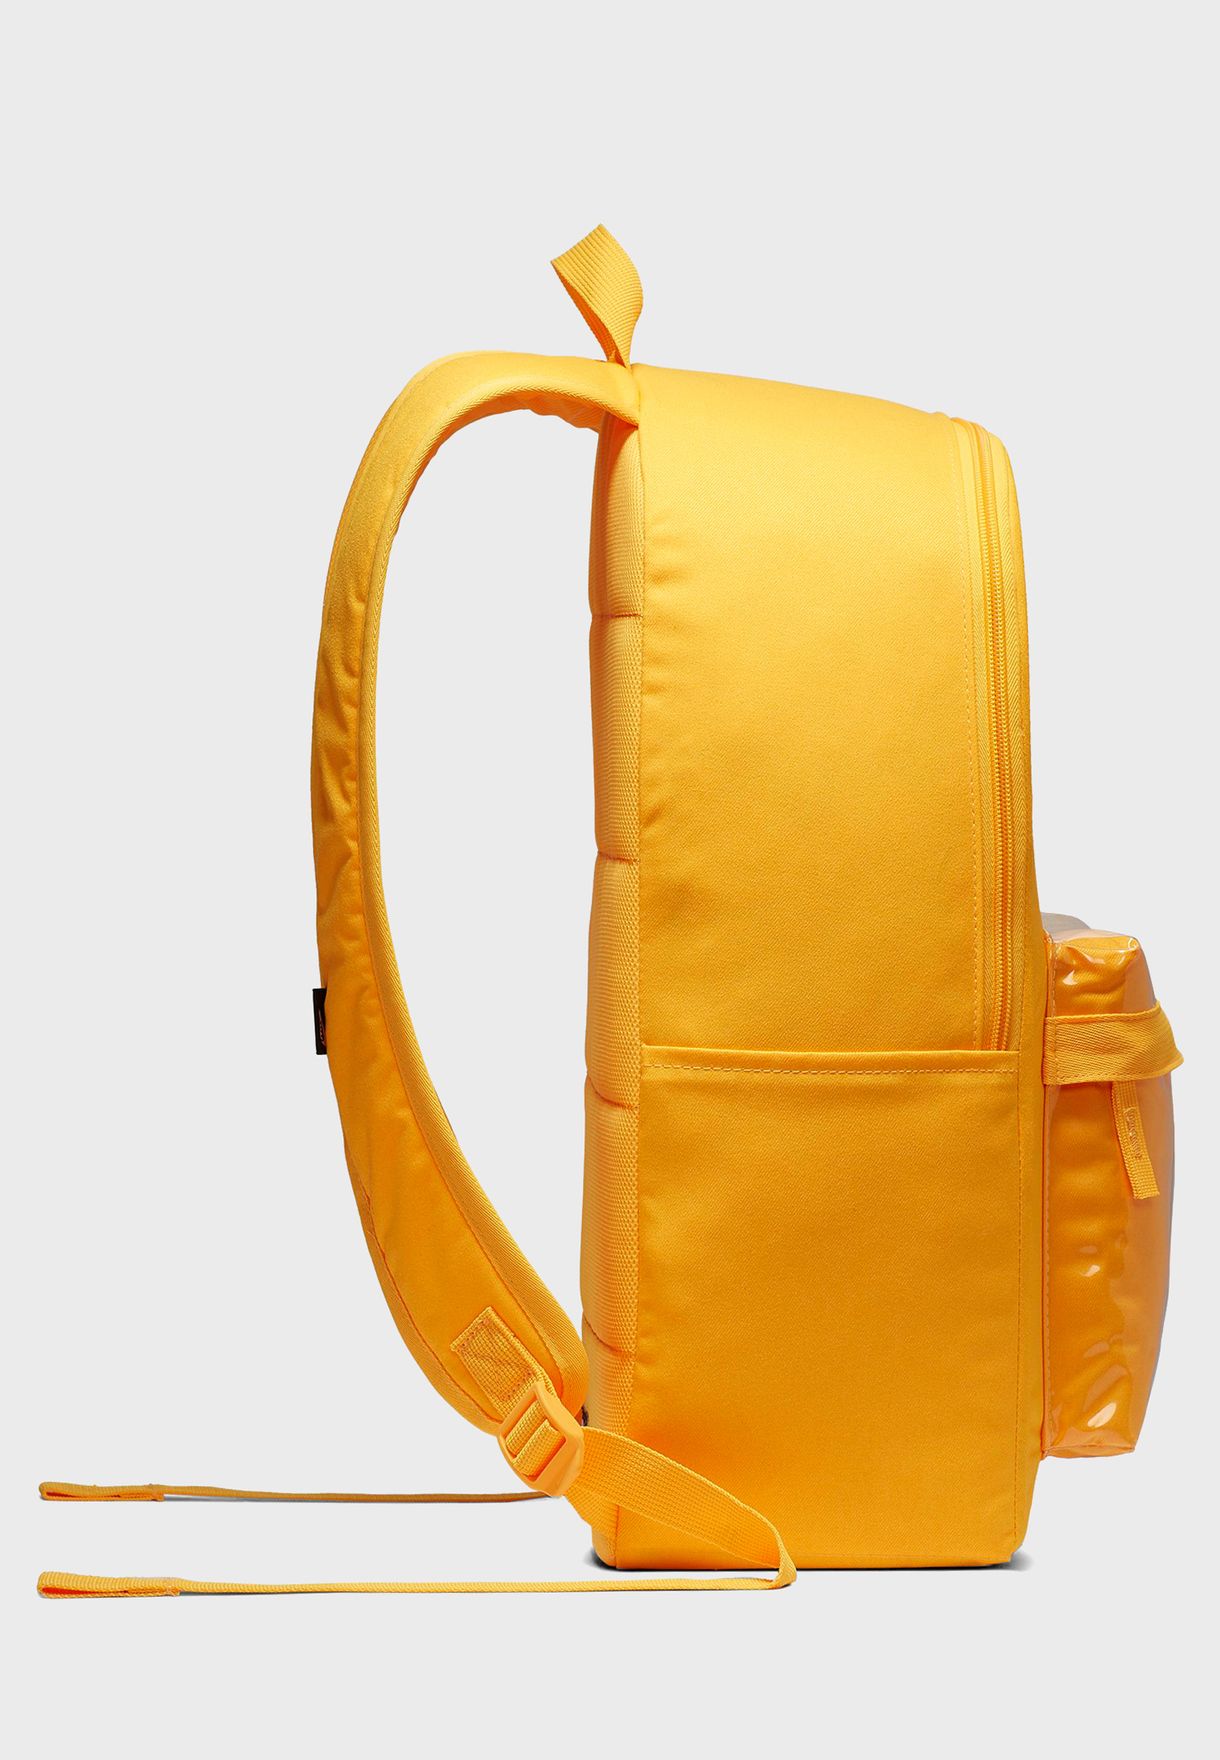 nike heritage 2.0 backpack yellow